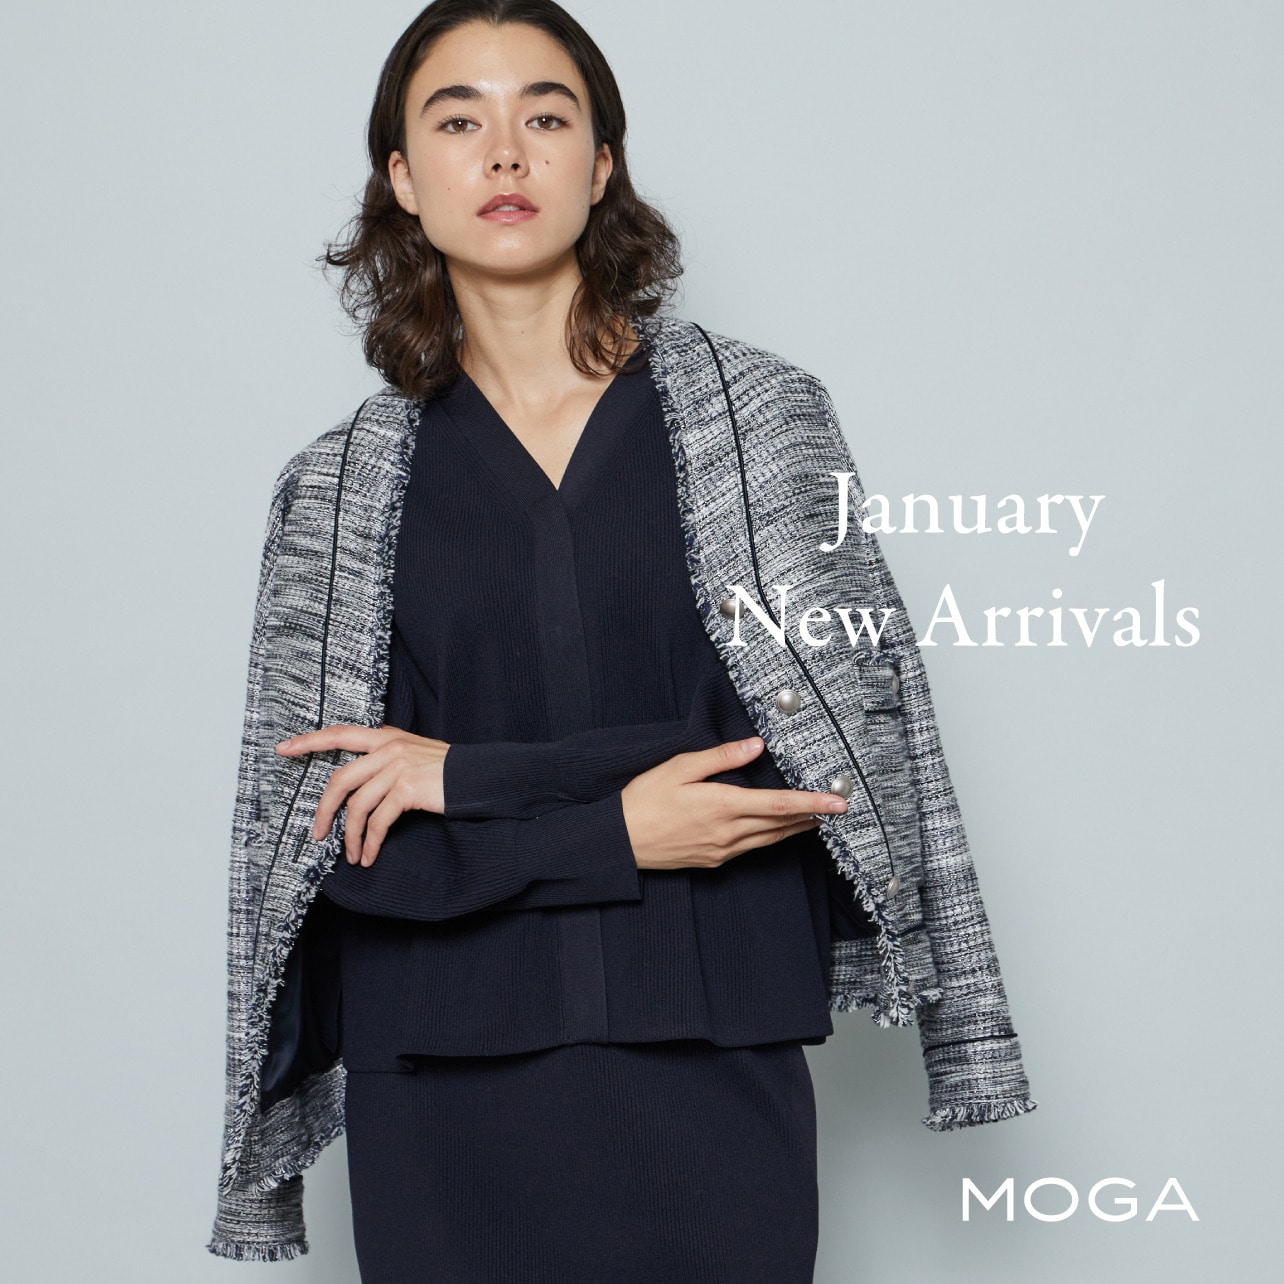 MOGA January New Arrivals